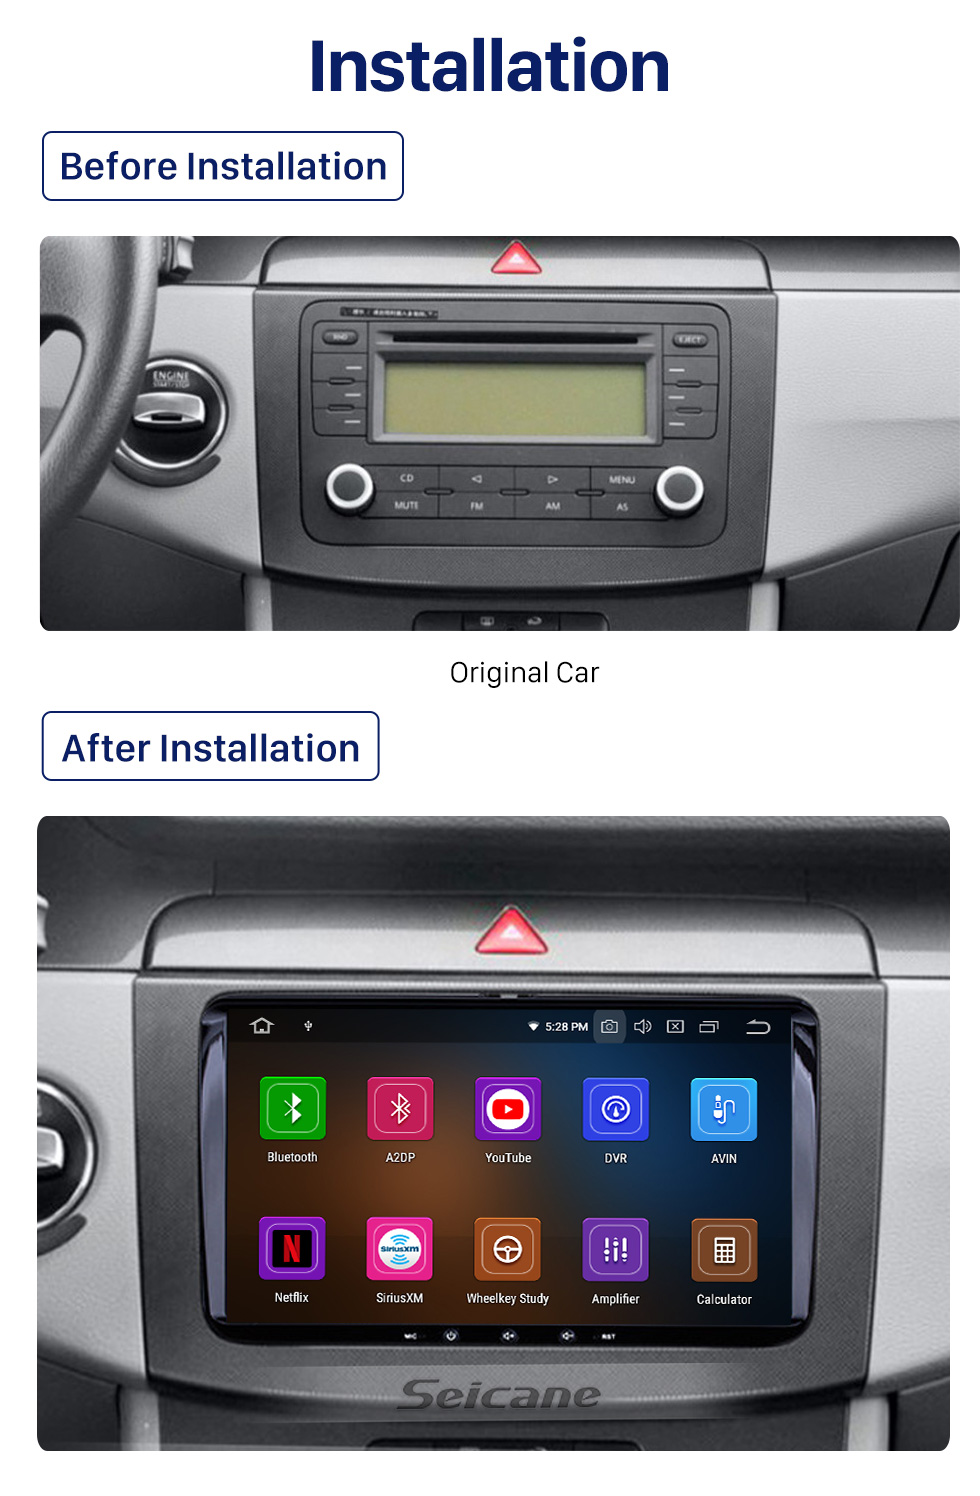 Seicane Android 10.0 sistema de navegação GPS para 2009 2010 2011 VW Volkswagen Passat B6 com DVD Player Rádio Bluetooth LinkMirror OBD2 DVR Retrovisor Câmera Controle de volante 3G WiFi